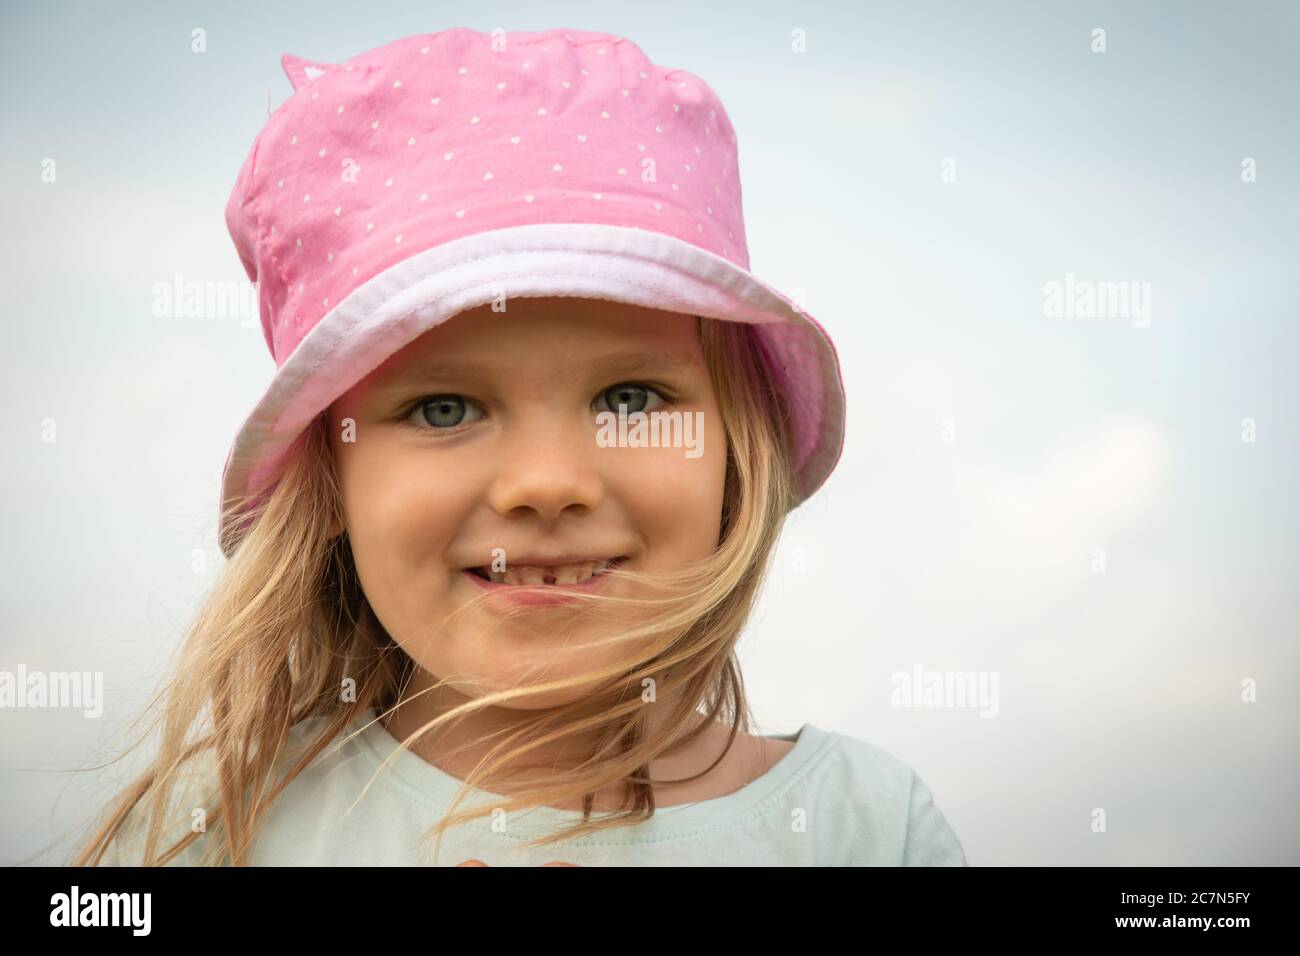 Mädchen Kind Porträt. Kleines Kind lächelndes Gesicht. Glücklich liebenswert und ziemlich junge weibliche Kopf. Freude und Glück Ausdruck des kaukasischen Kindes. Nahaufnahme Stockfoto